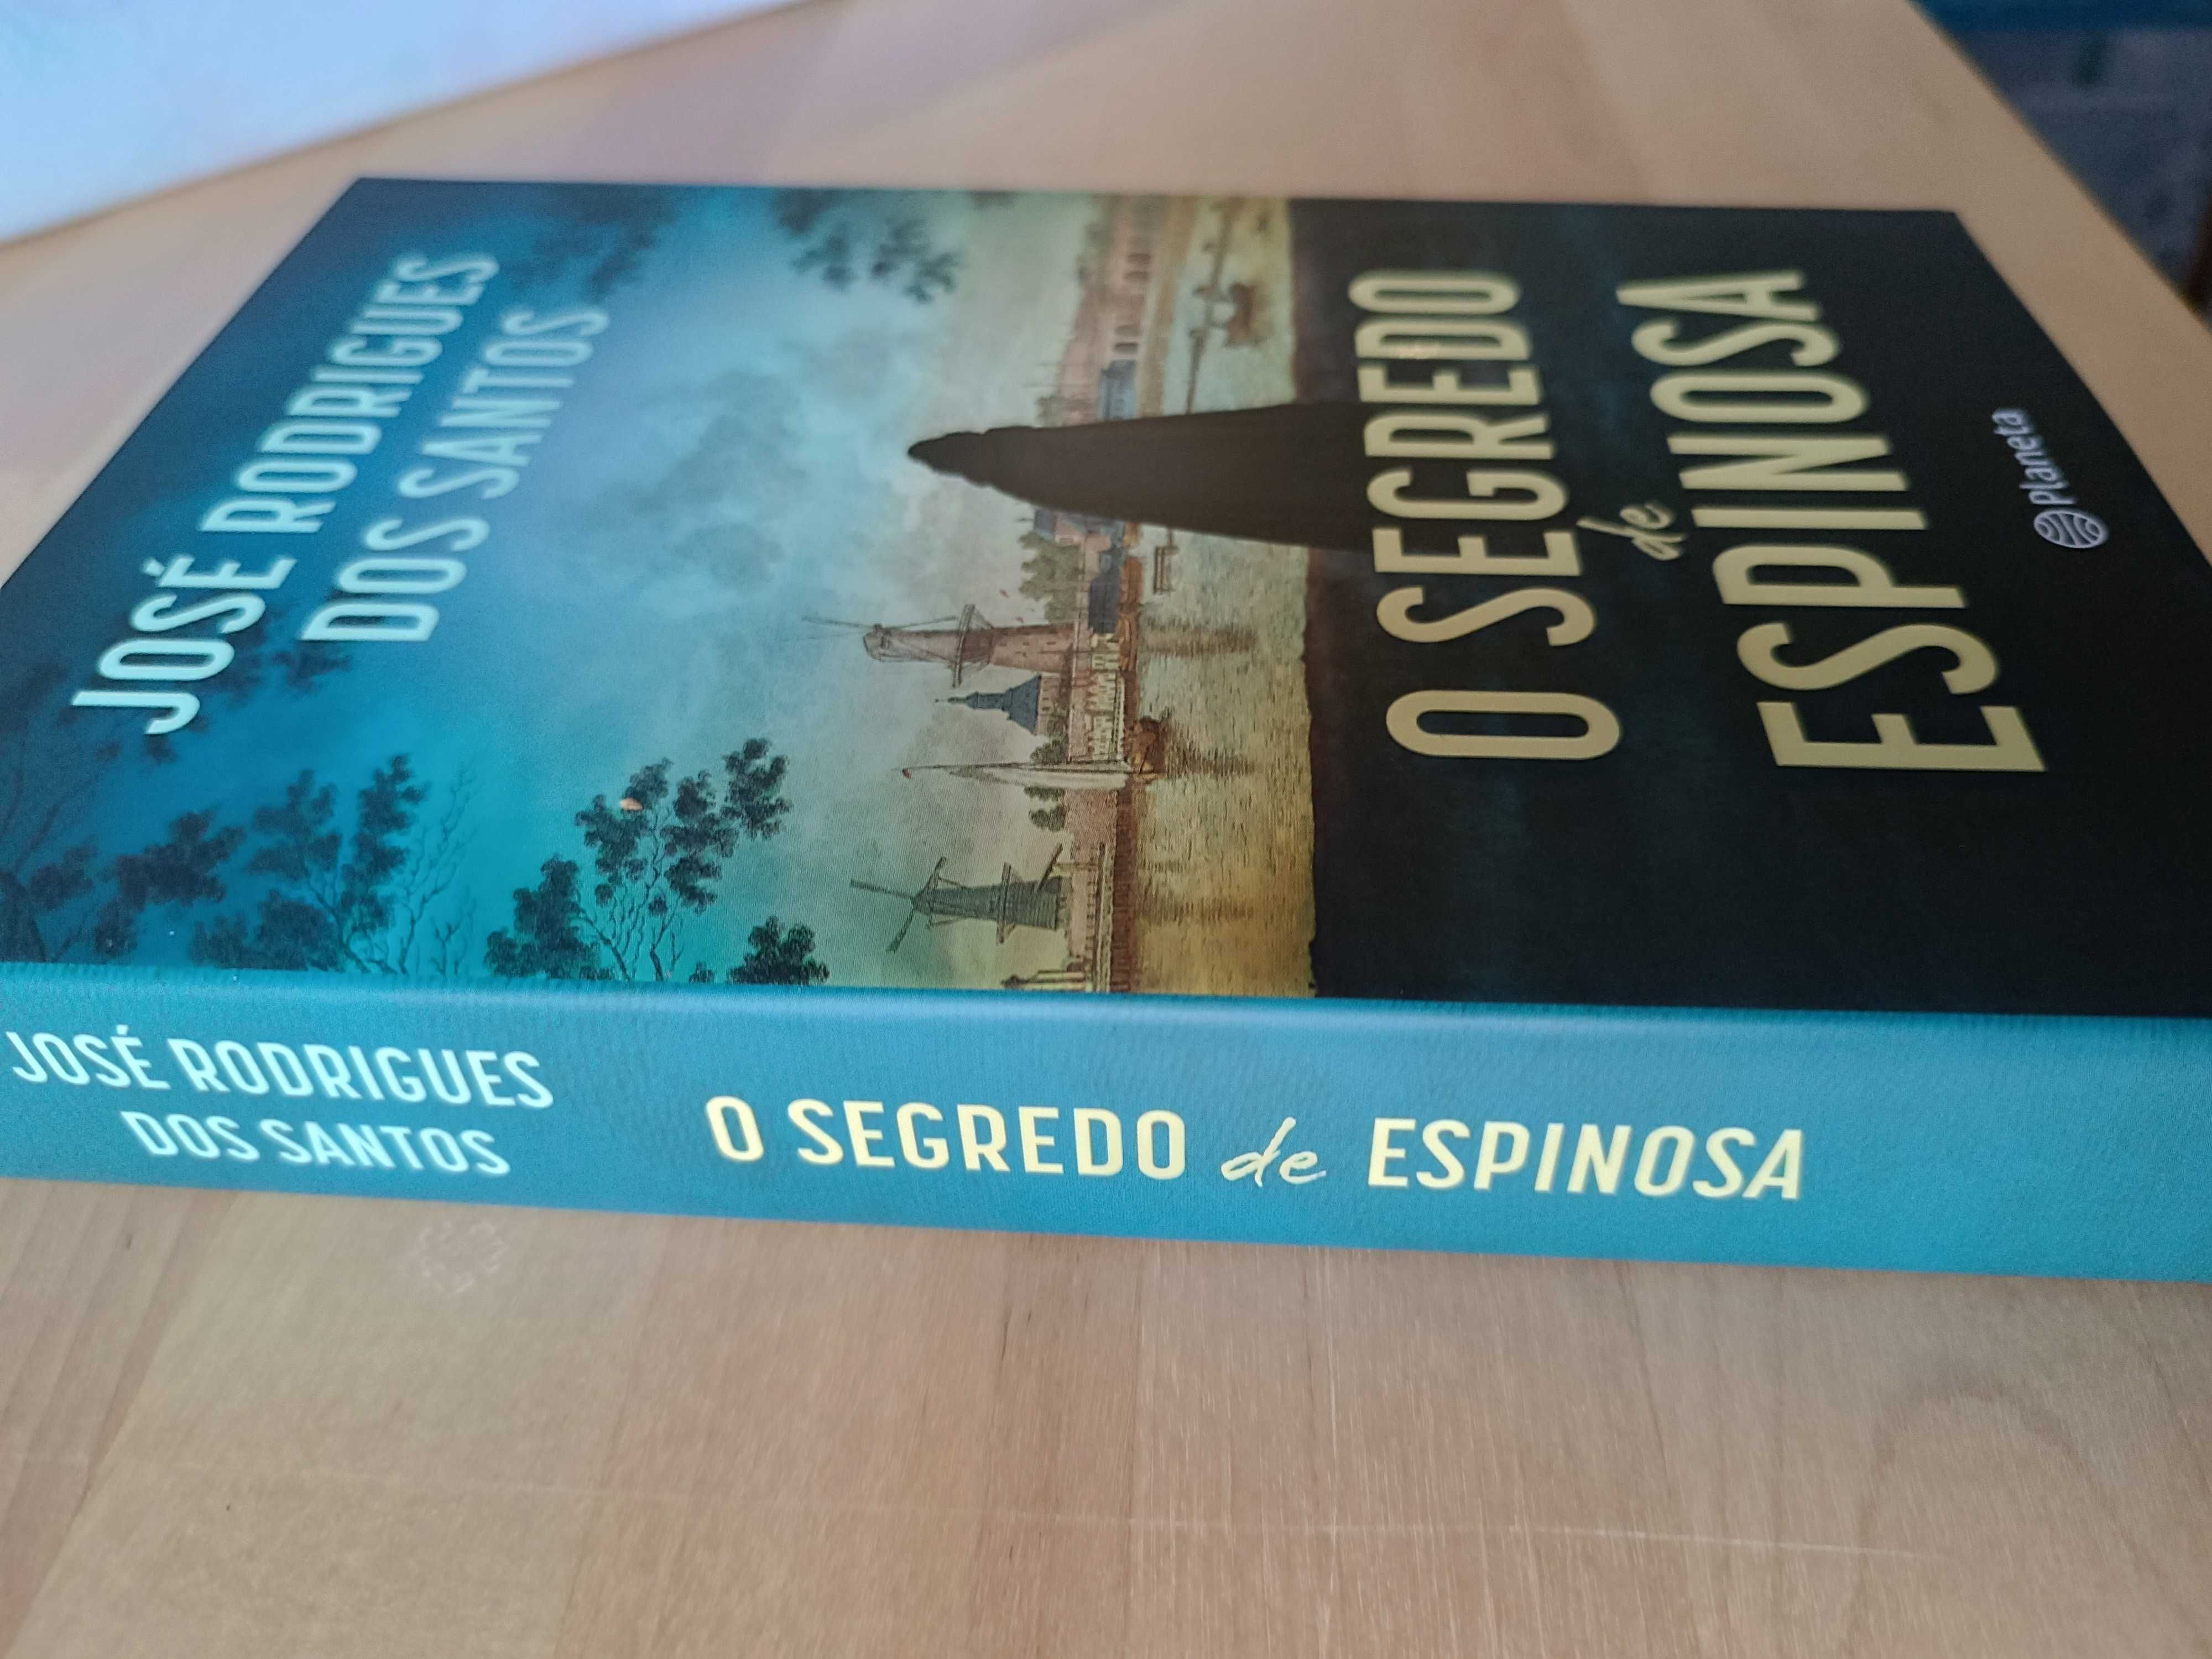 Livro José Rodrigues dos Santos o SEGREDO DE ESPINOSA